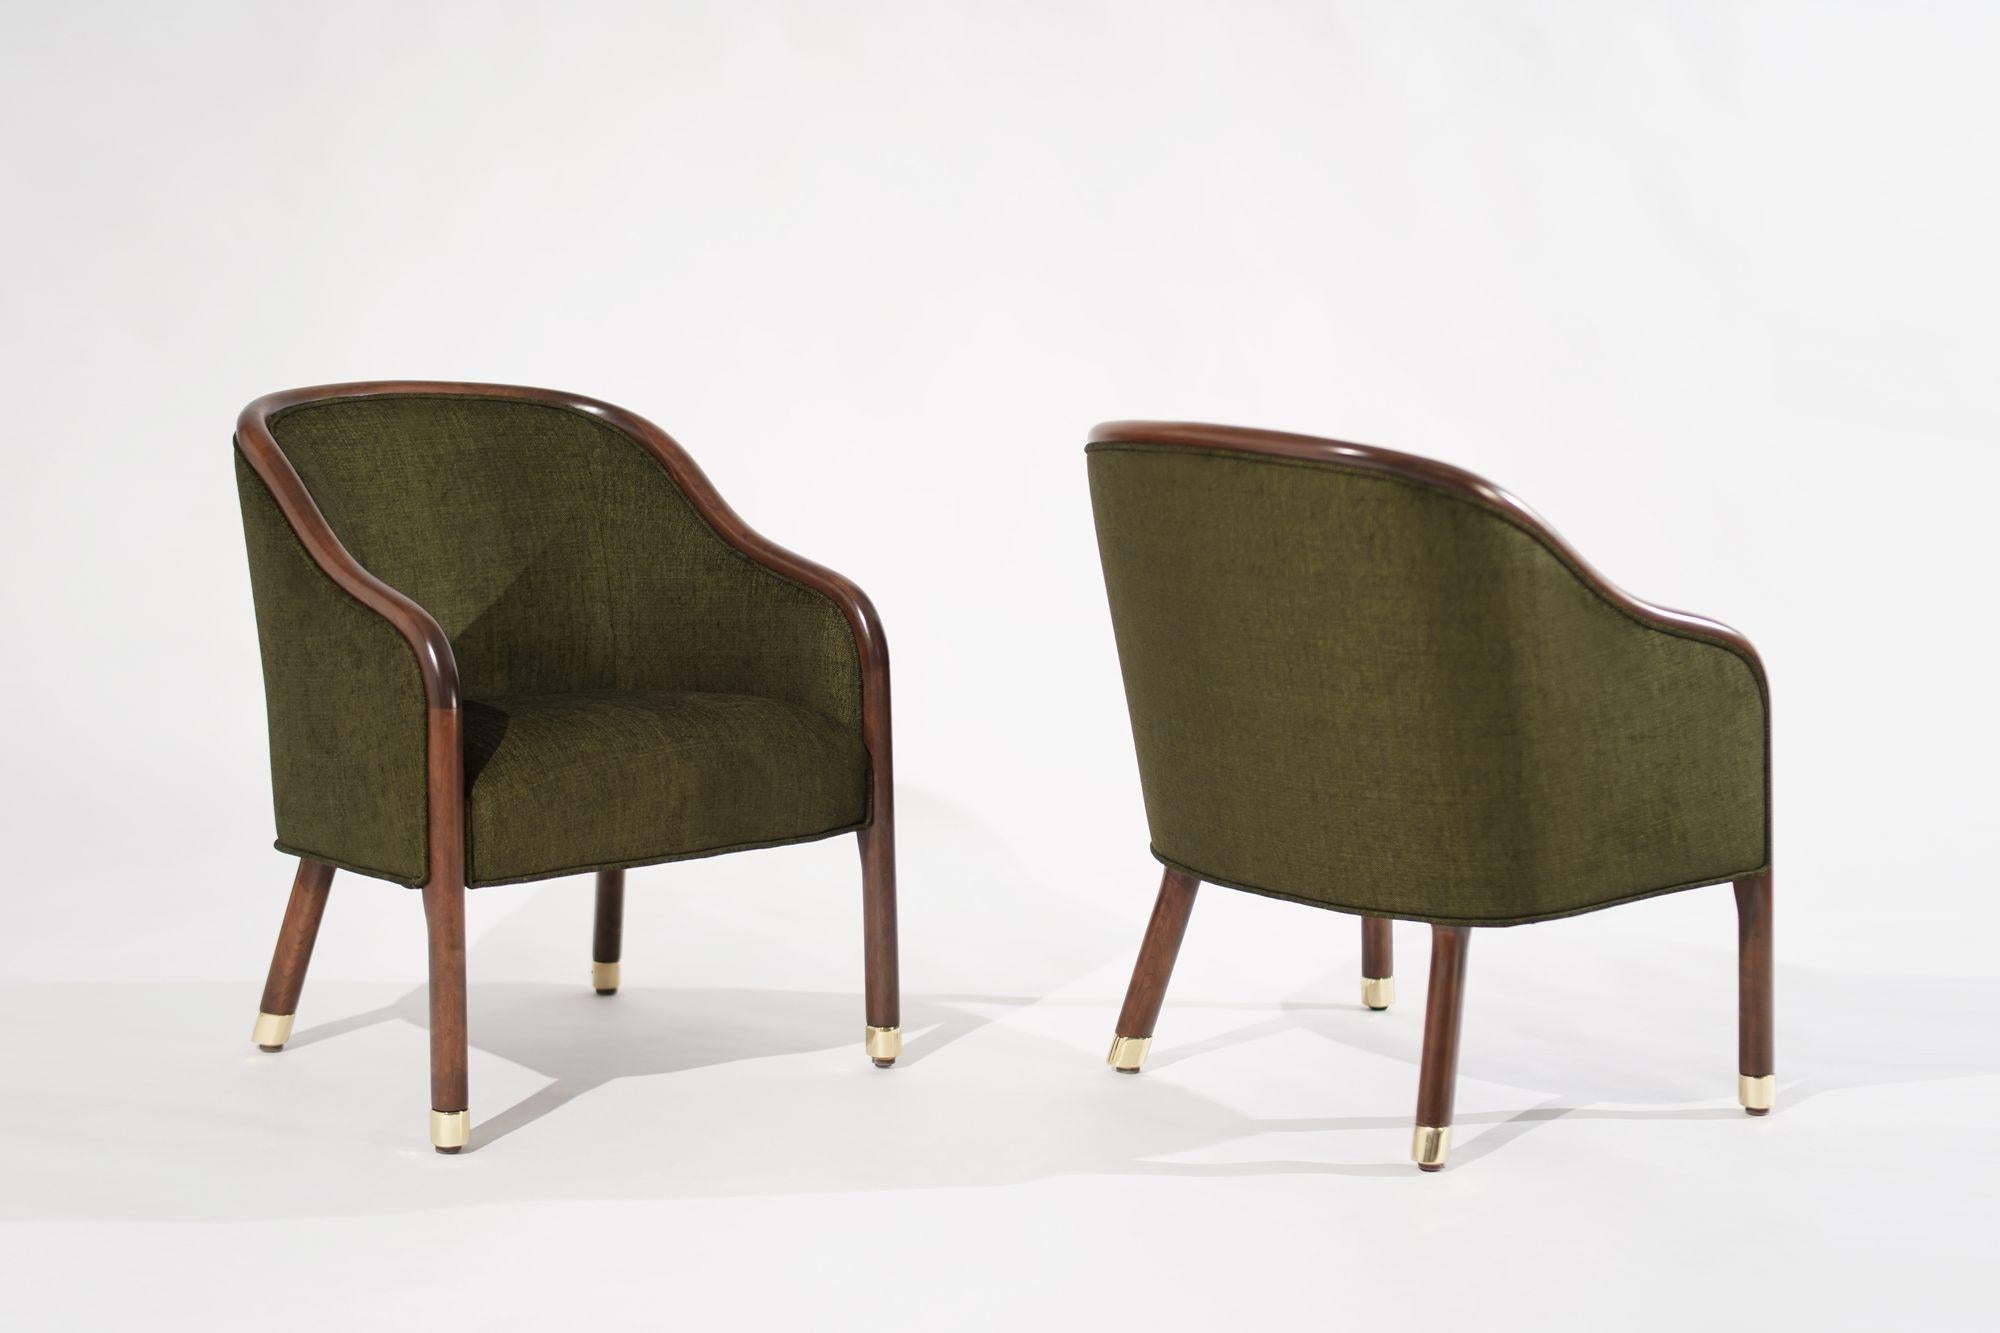 Chaises longues vintage Ward Bennett, véritable incarnation du design des années 1970, gracieusement restaurées par Stamford Modern. Ces chaises exhalent le charme intemporel de l'époque avec leur cadre en noyer apparent et leurs pieds en laiton,